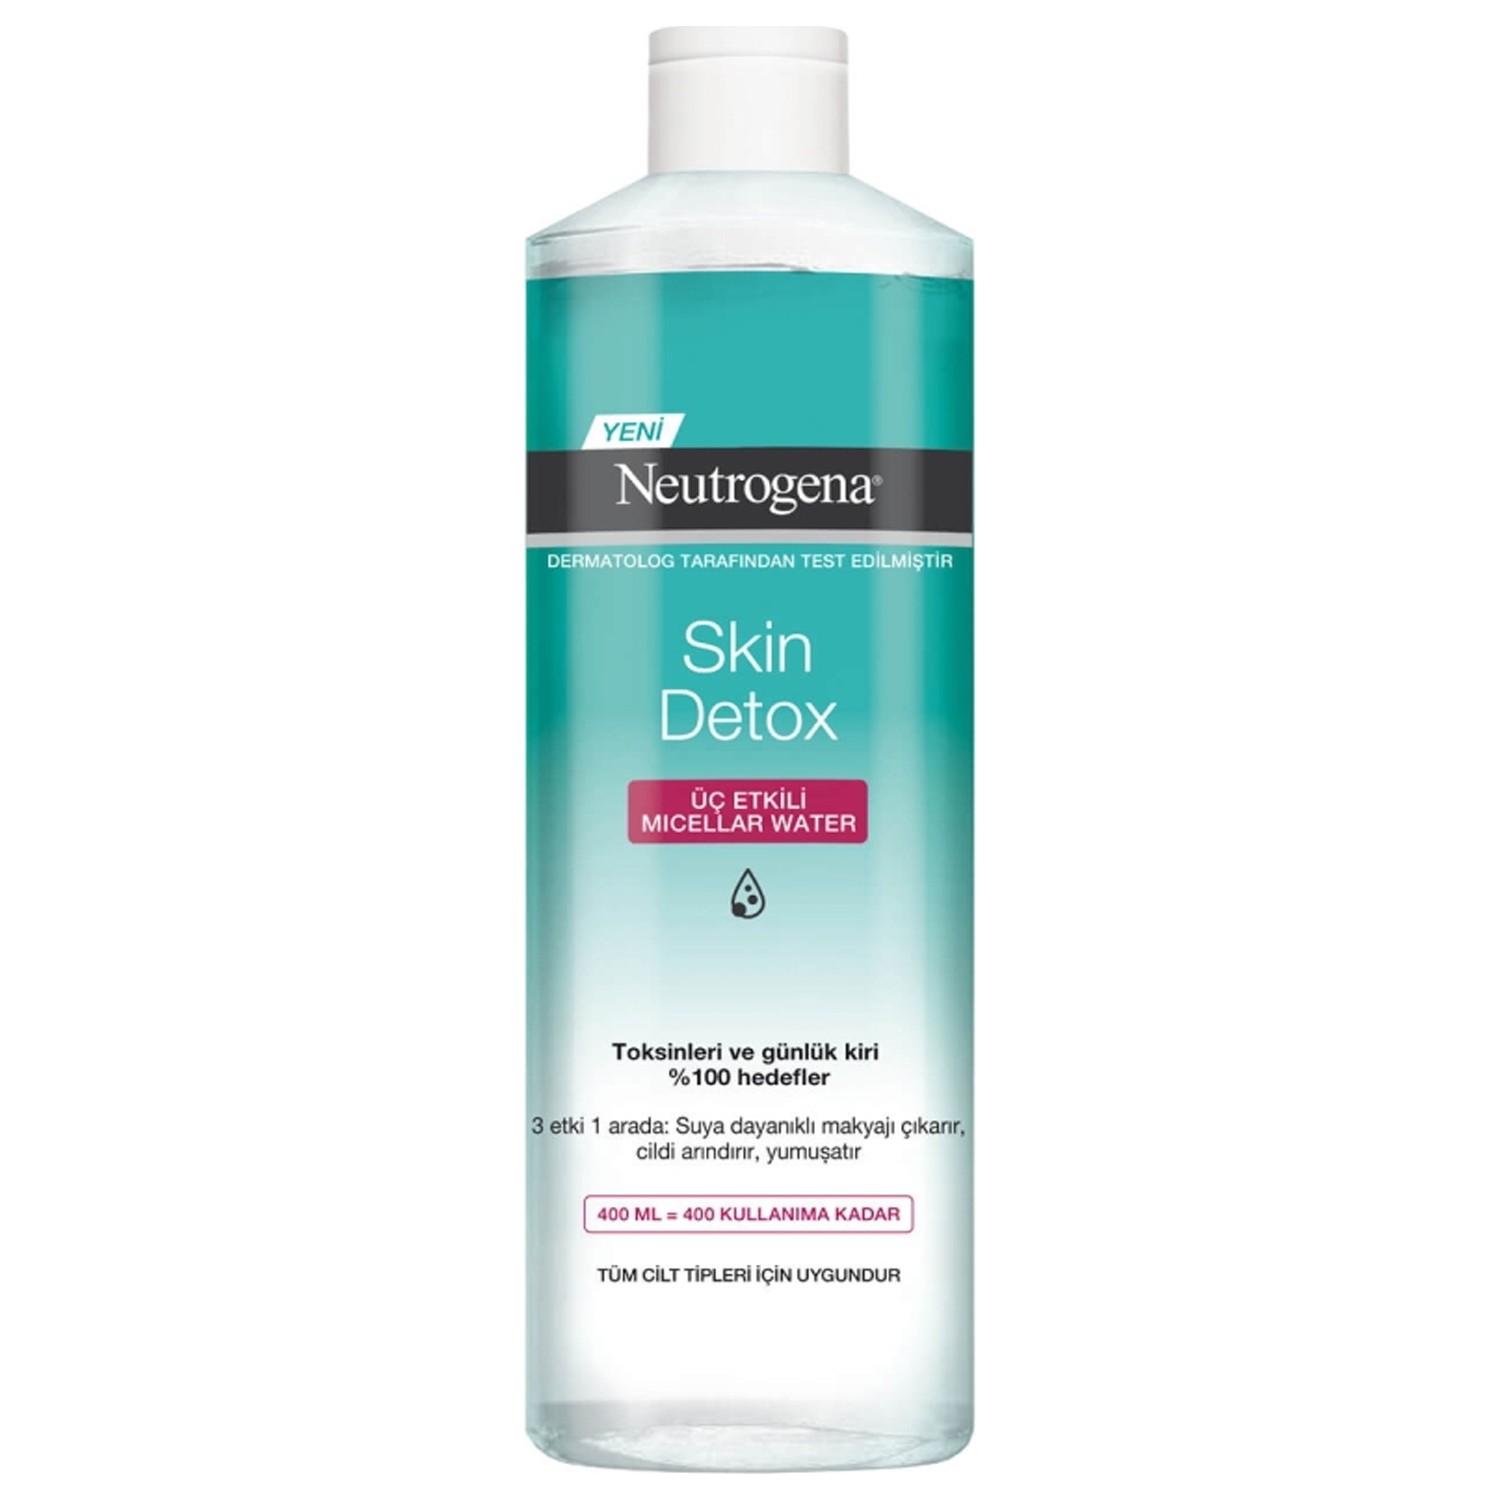 Мицеллярная вода Neutrogena Skin Detox Tip для снятия макияжа, 400 мл shik рефил мицеллярная вода для снятия макияжа 200 мл